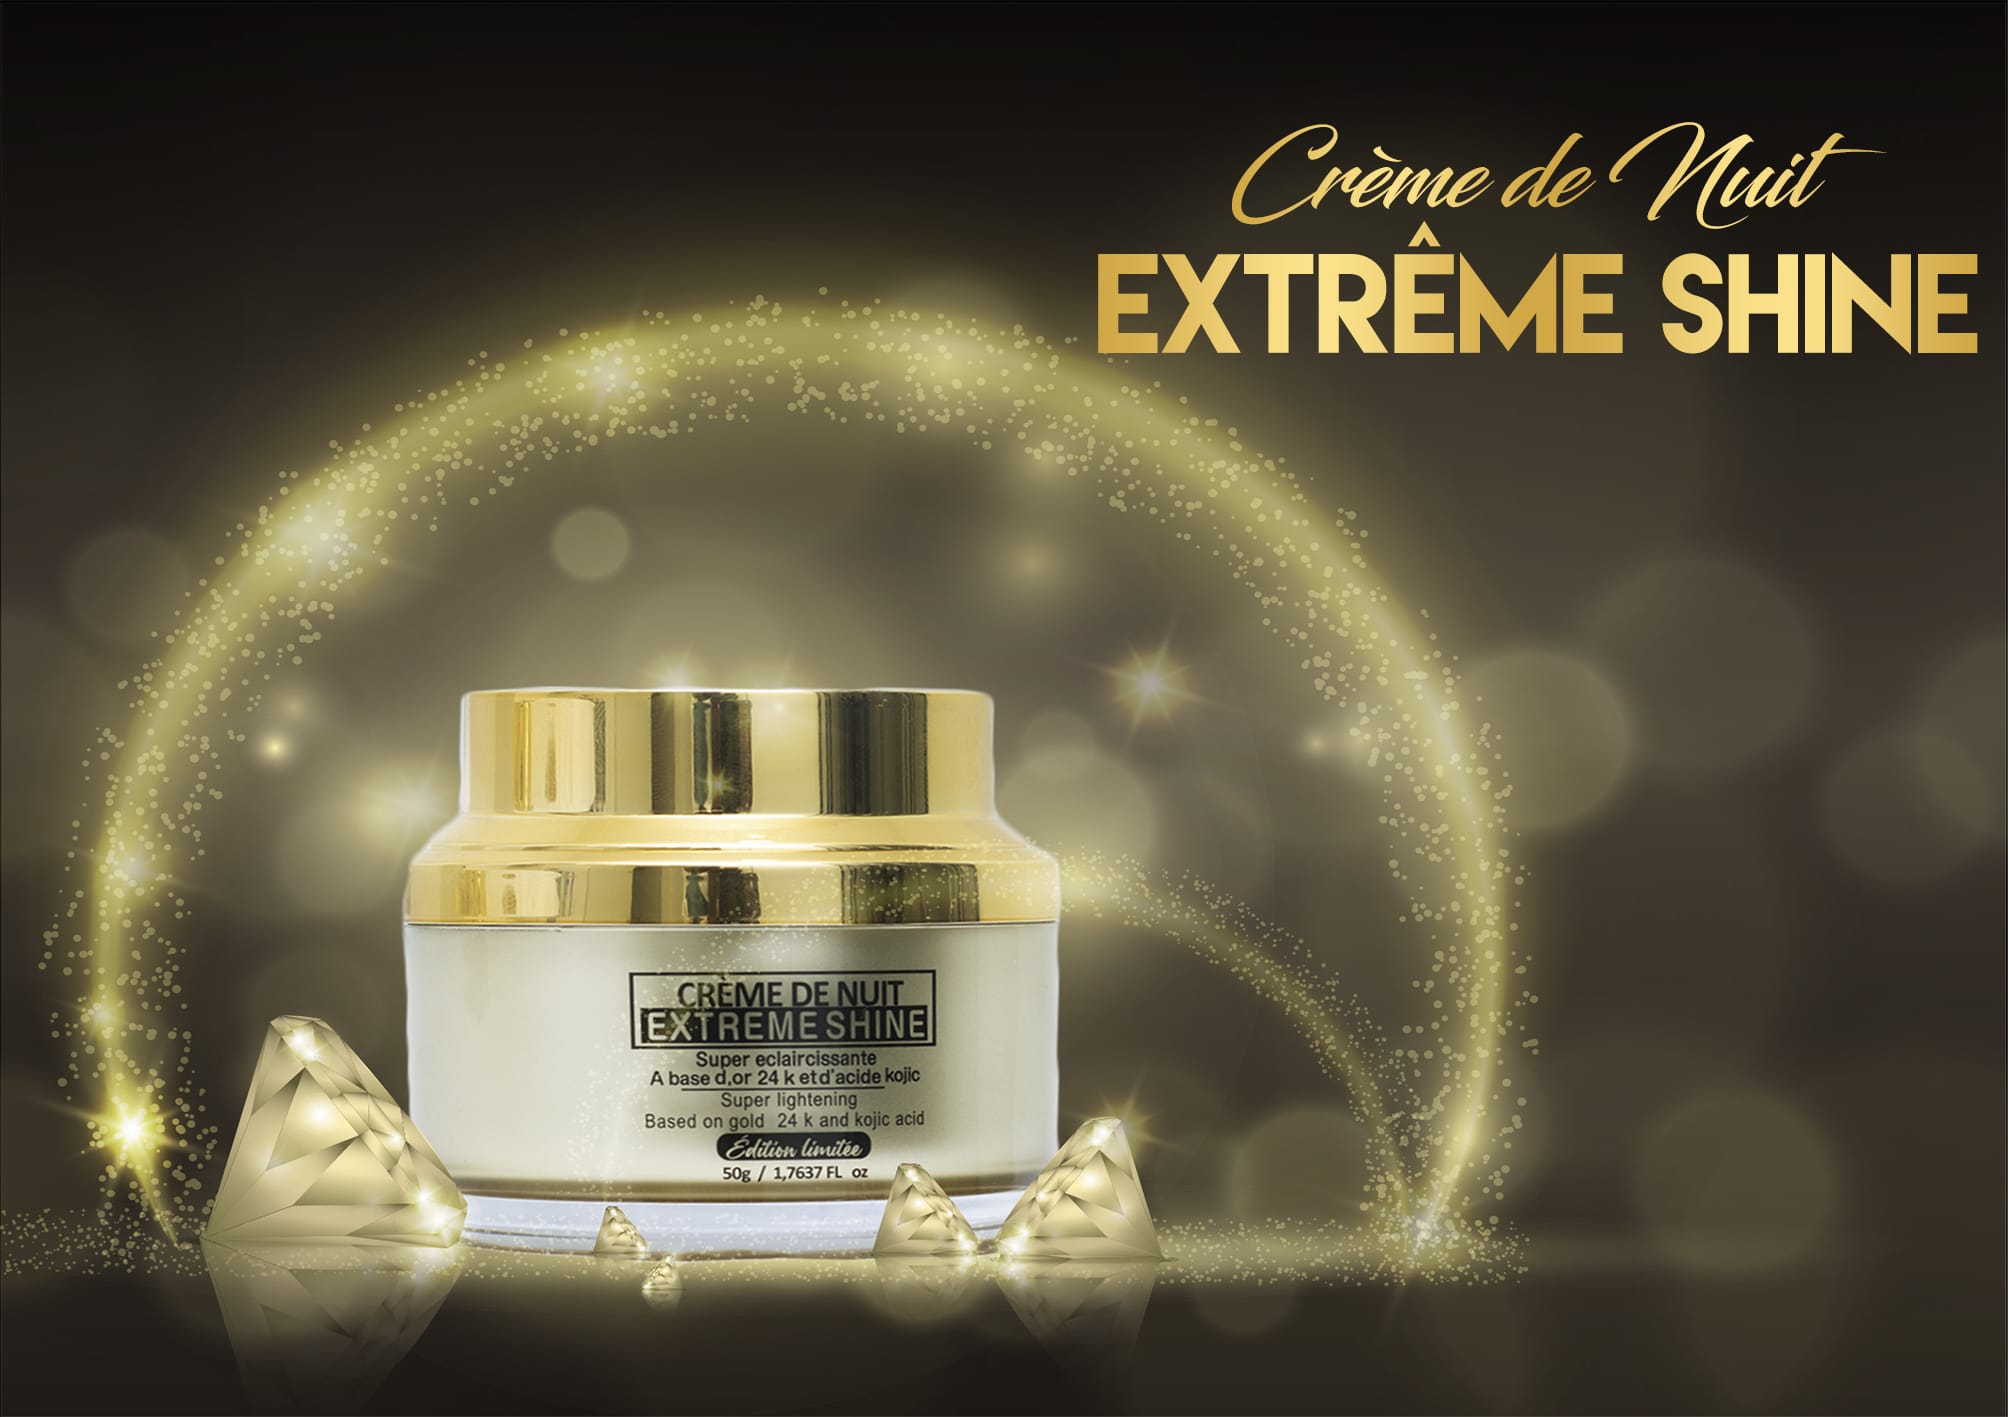 Crème de nuit visage extrême shine 24k d'or Super éclaircissante 50g